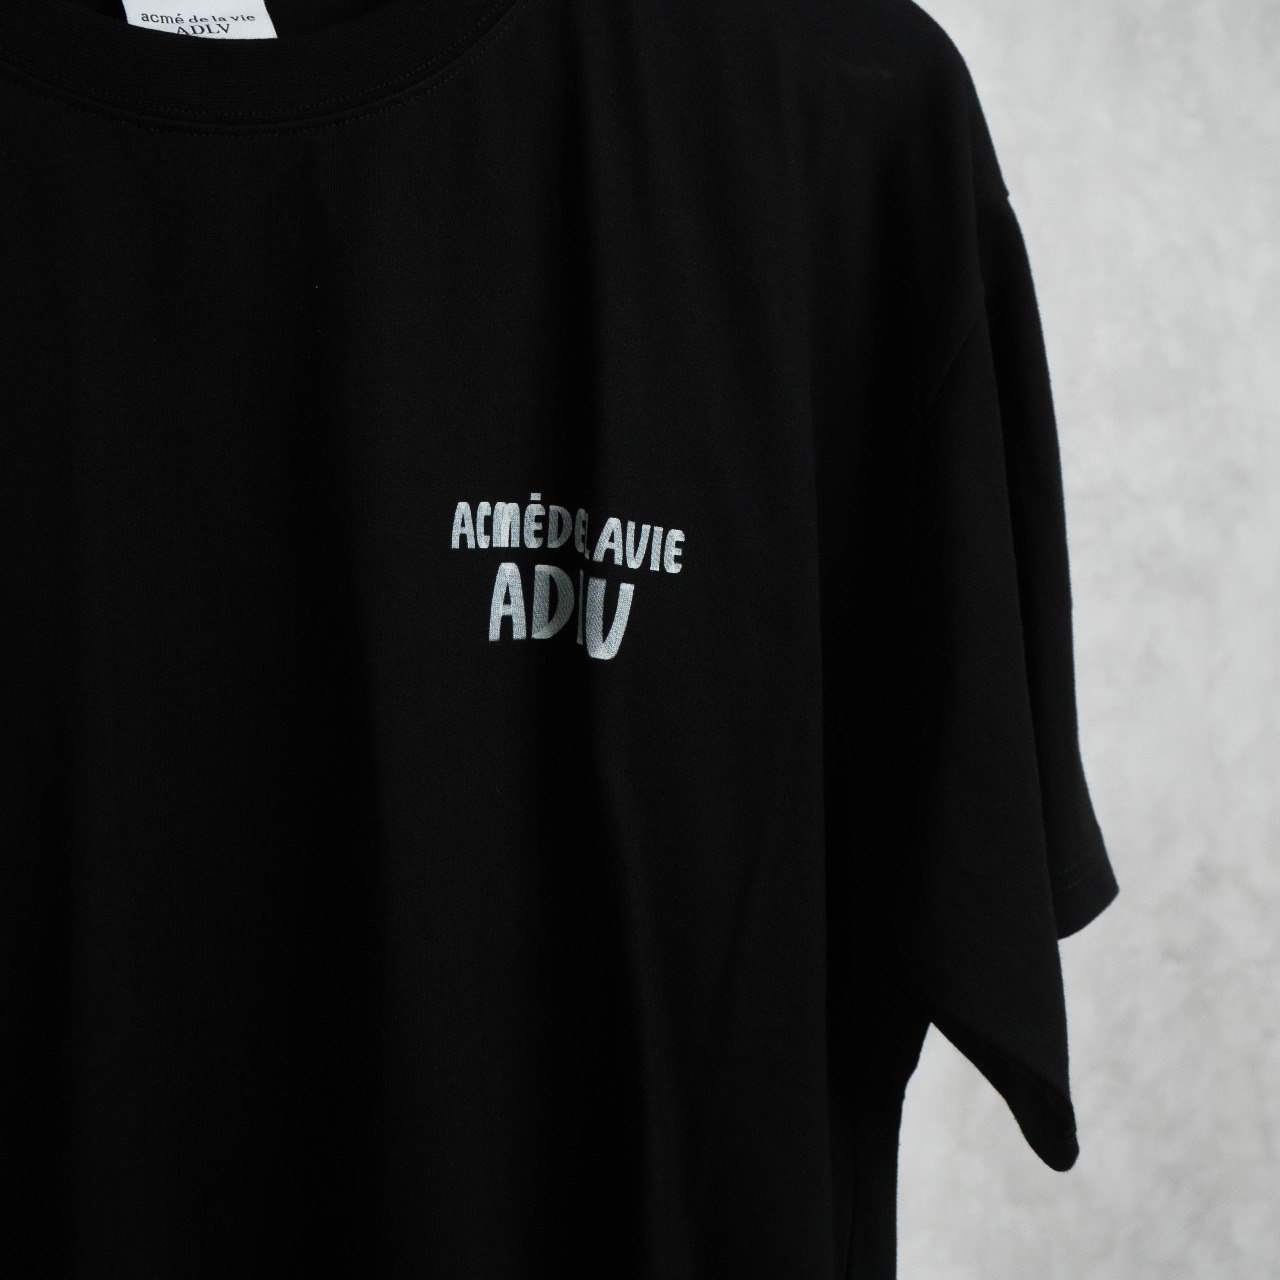 Kaos ADLV Acme De La Vie TEXT SILVER MARKER BLACK Tshirt 100% ORIGINAL ...